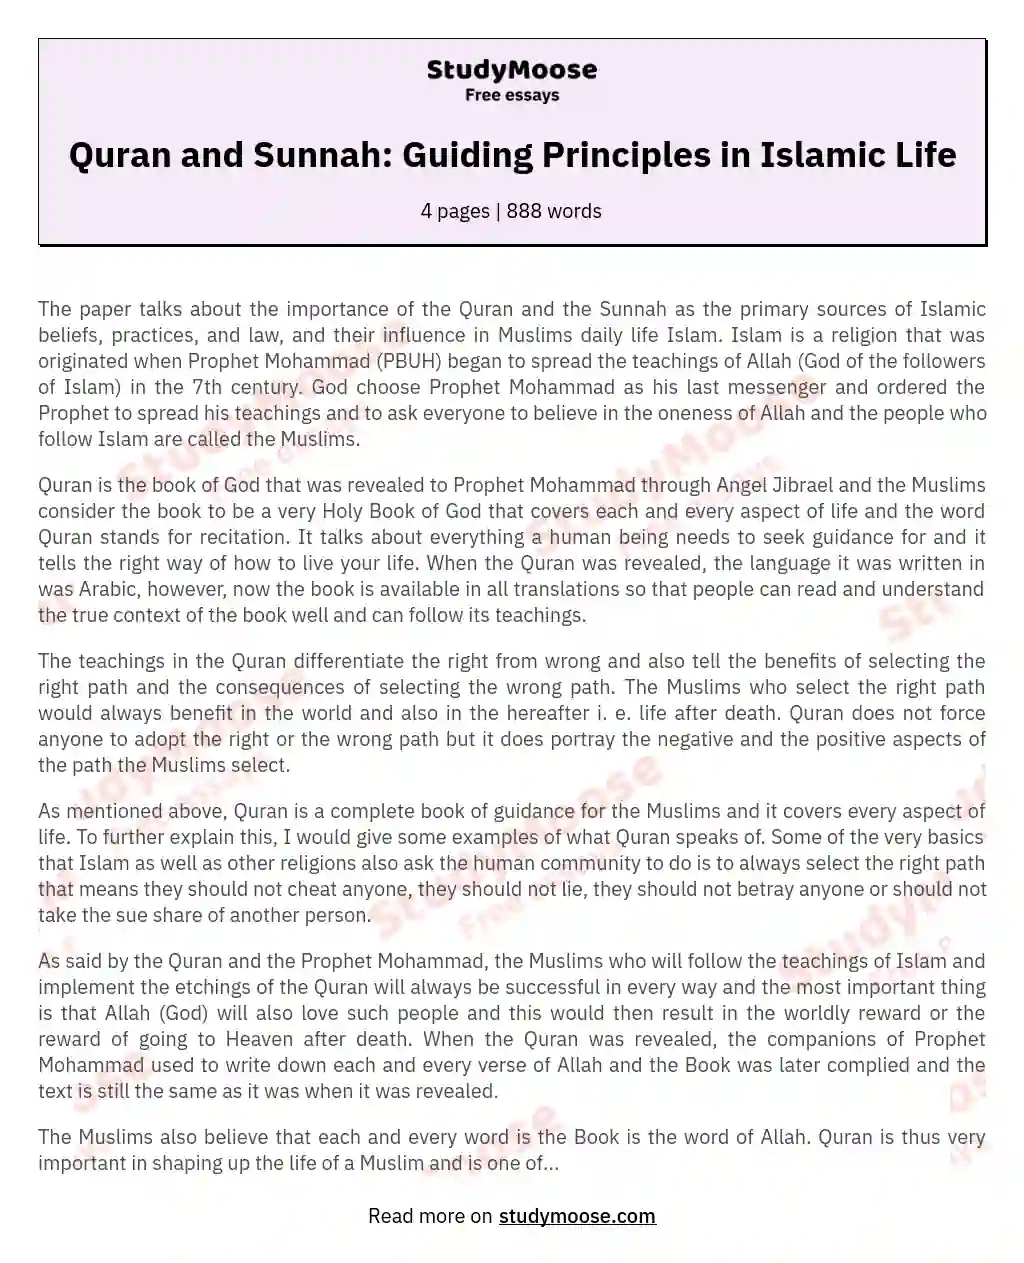 Islam, Quran, Sunnah